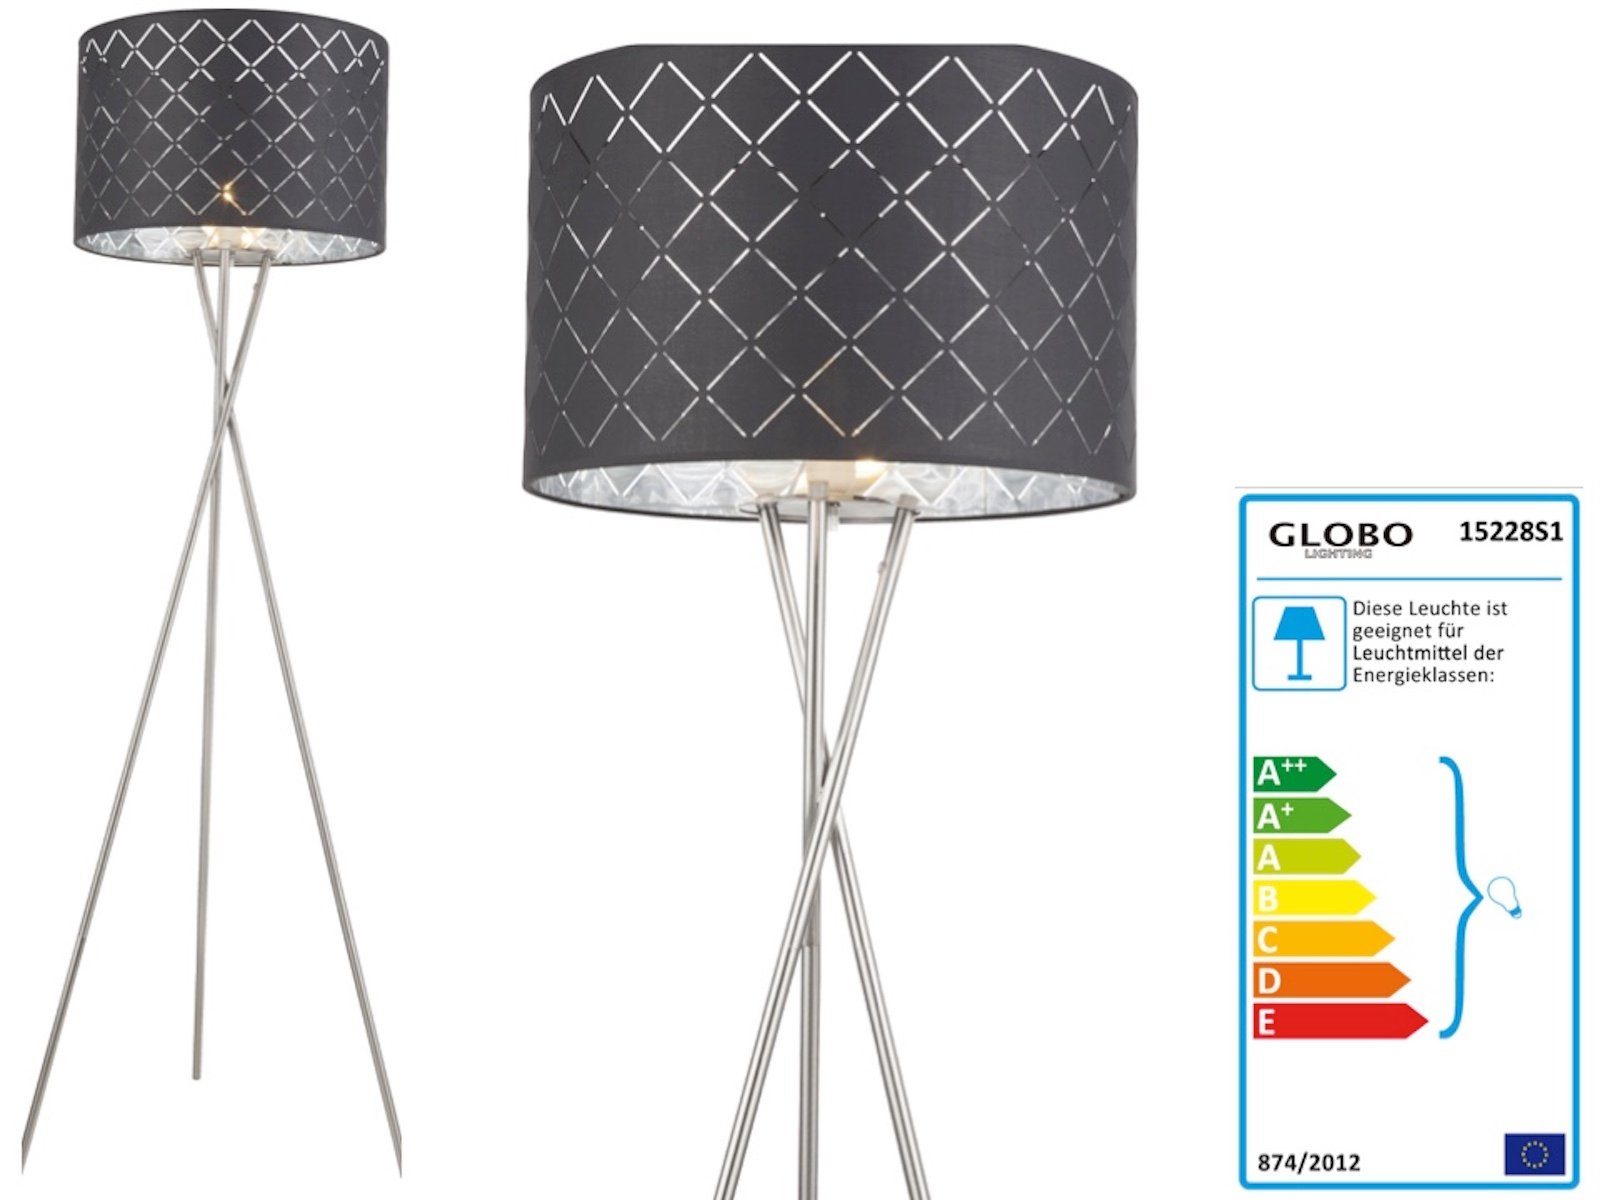 Globo Stehlampe GLOBO Stehlampe Wohnzimmer Stehleuchte modern grau silber Dreibein | Standleuchten